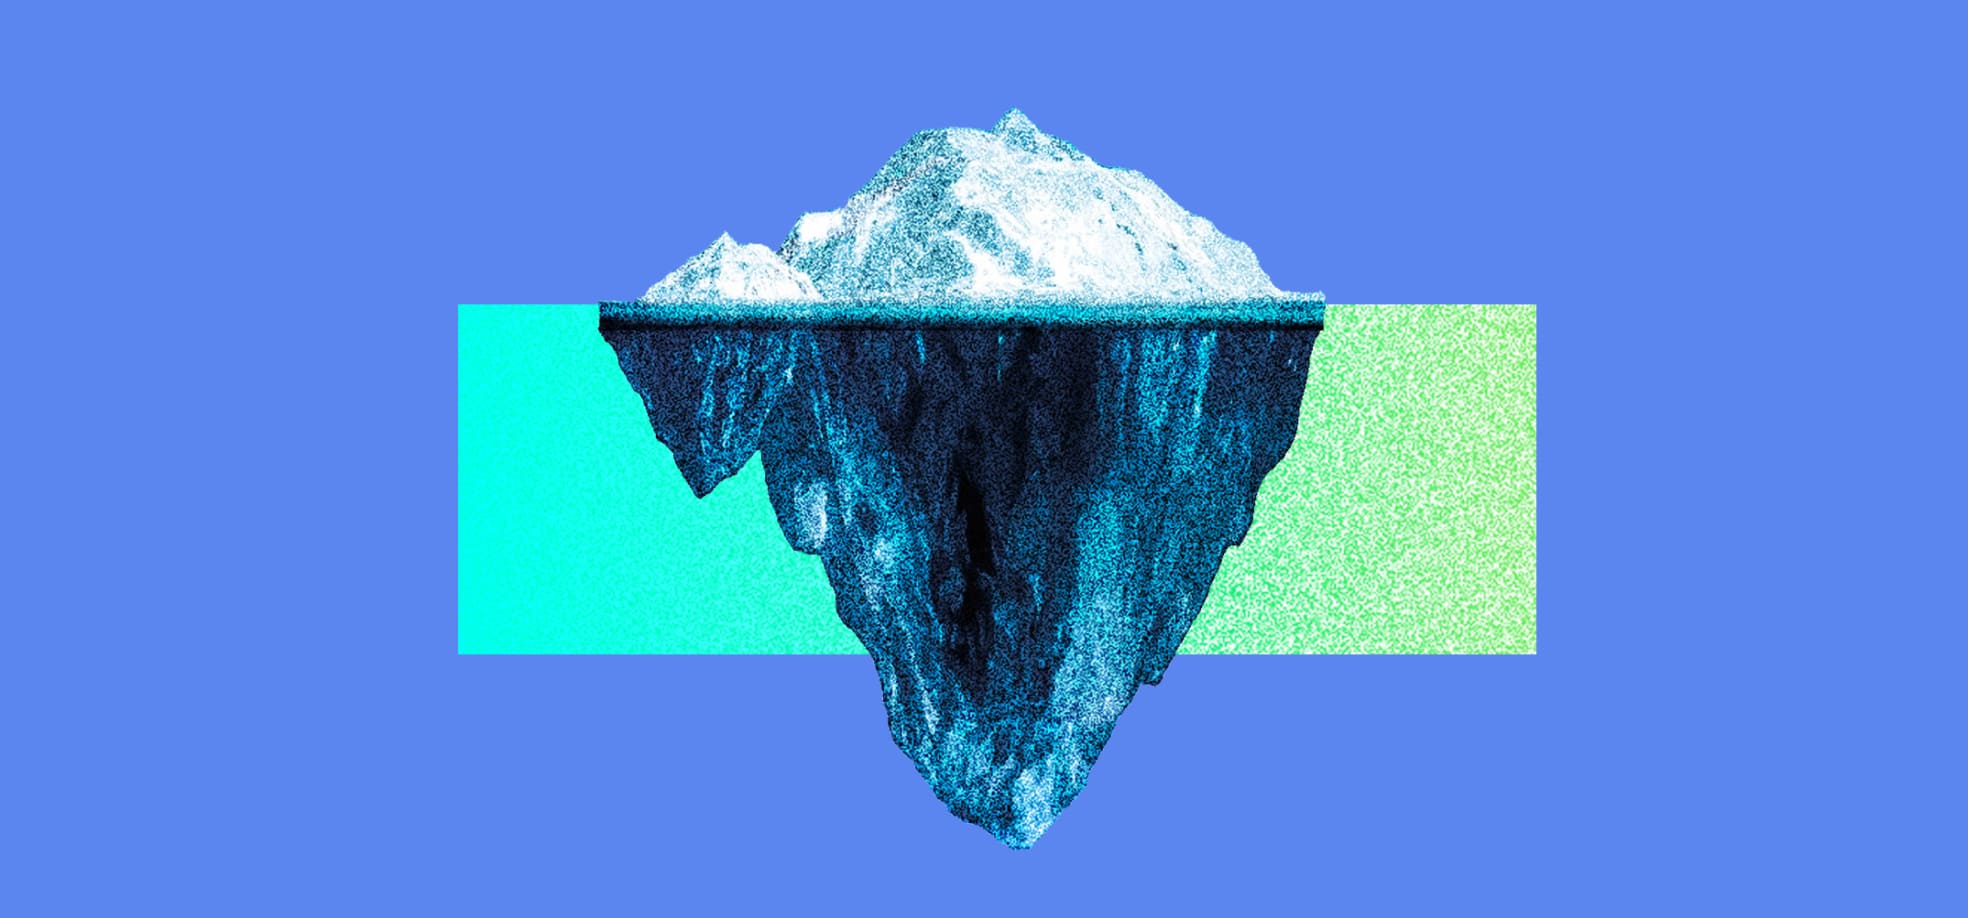 Iceberg on the blue background